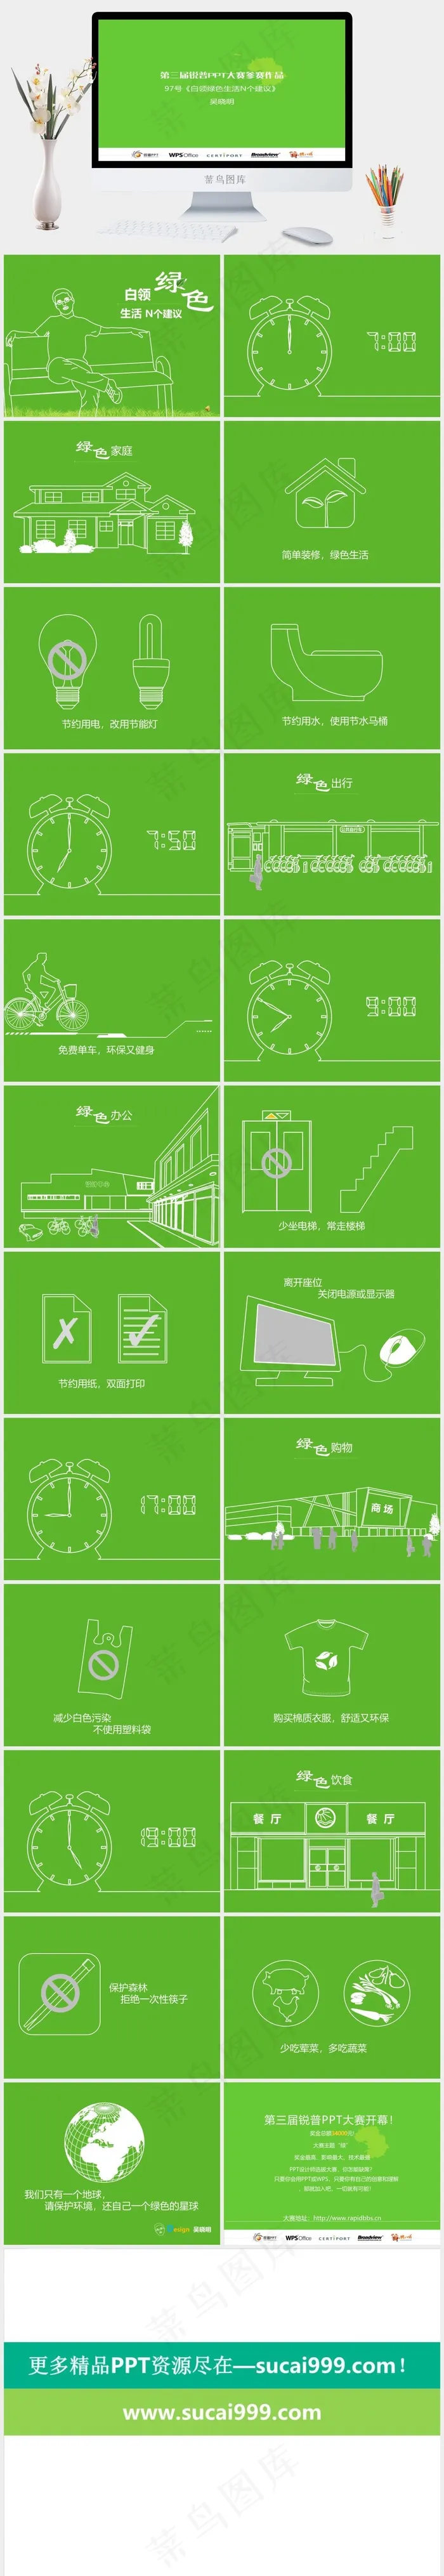 白领绿色生活N个建议ppt模板绿色营销简洁PPT模板